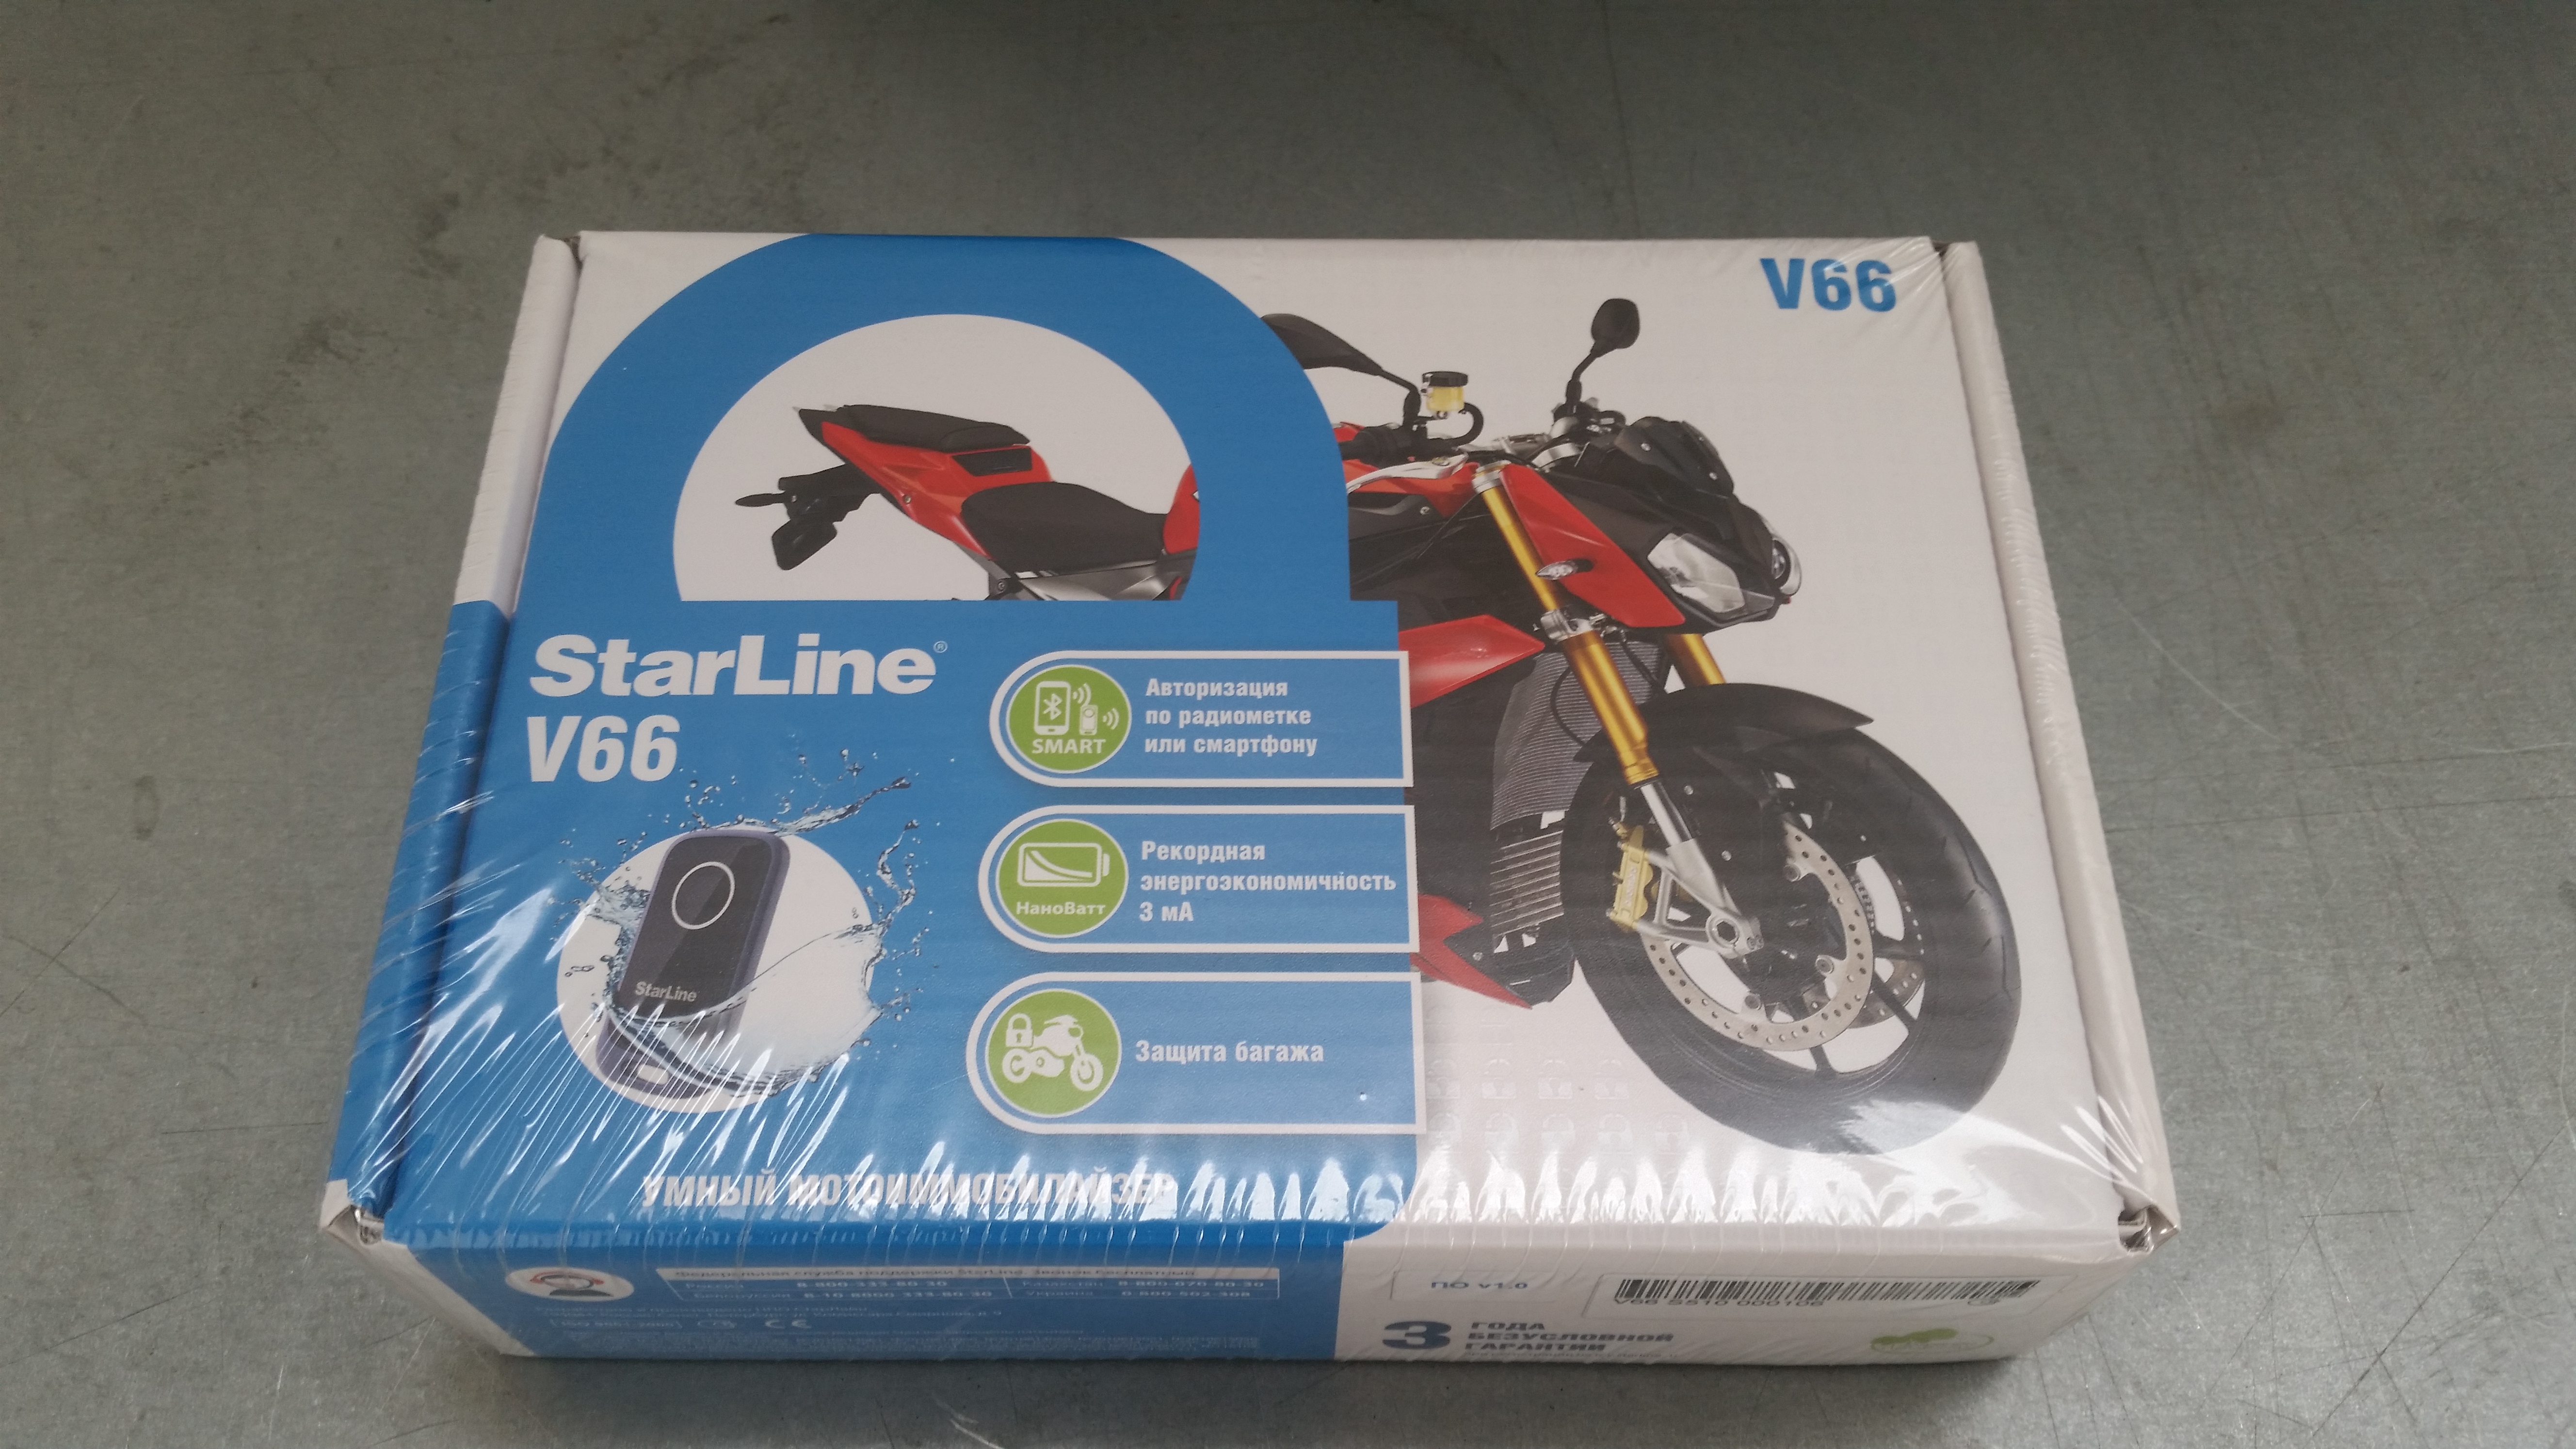 Starline v66. STARLINE Moto v66. STARLINE Moto v66 мотоиммобилайзер. Мотосигнализация STARLINE мото v66. Сигнализация старлайн v66.